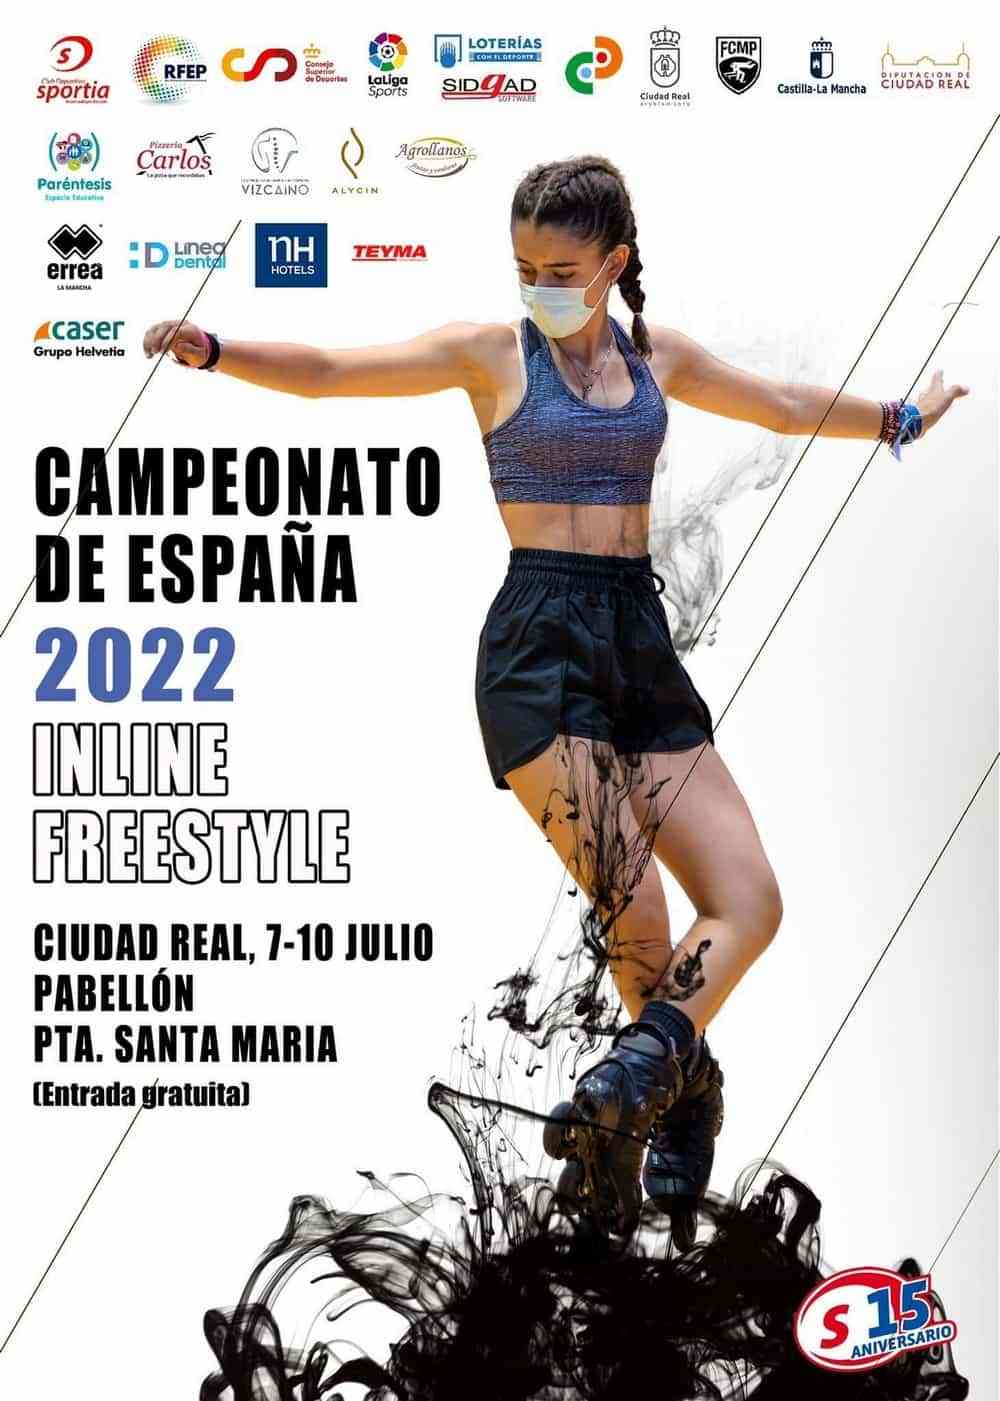 Campeonato de España de Patinaje en la modalidad de Freestyle